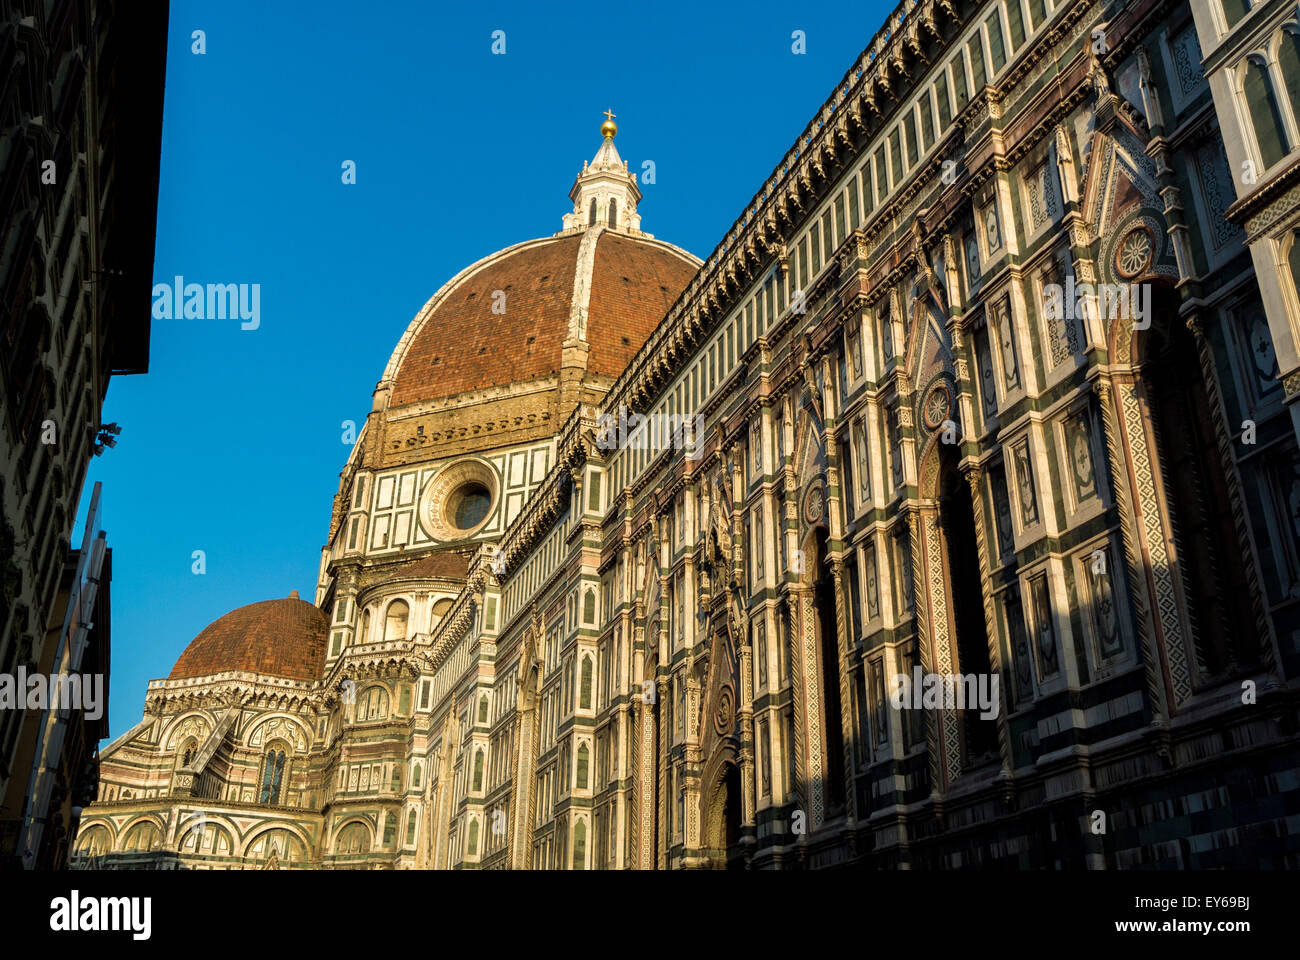 Die nördliche façade der Kathedrale von Florenz wurde von der Piazza del Duomo aus aufgenommen und blickte nach oben in Richtung der Kuppel. Florenz, Italien. Stockfoto